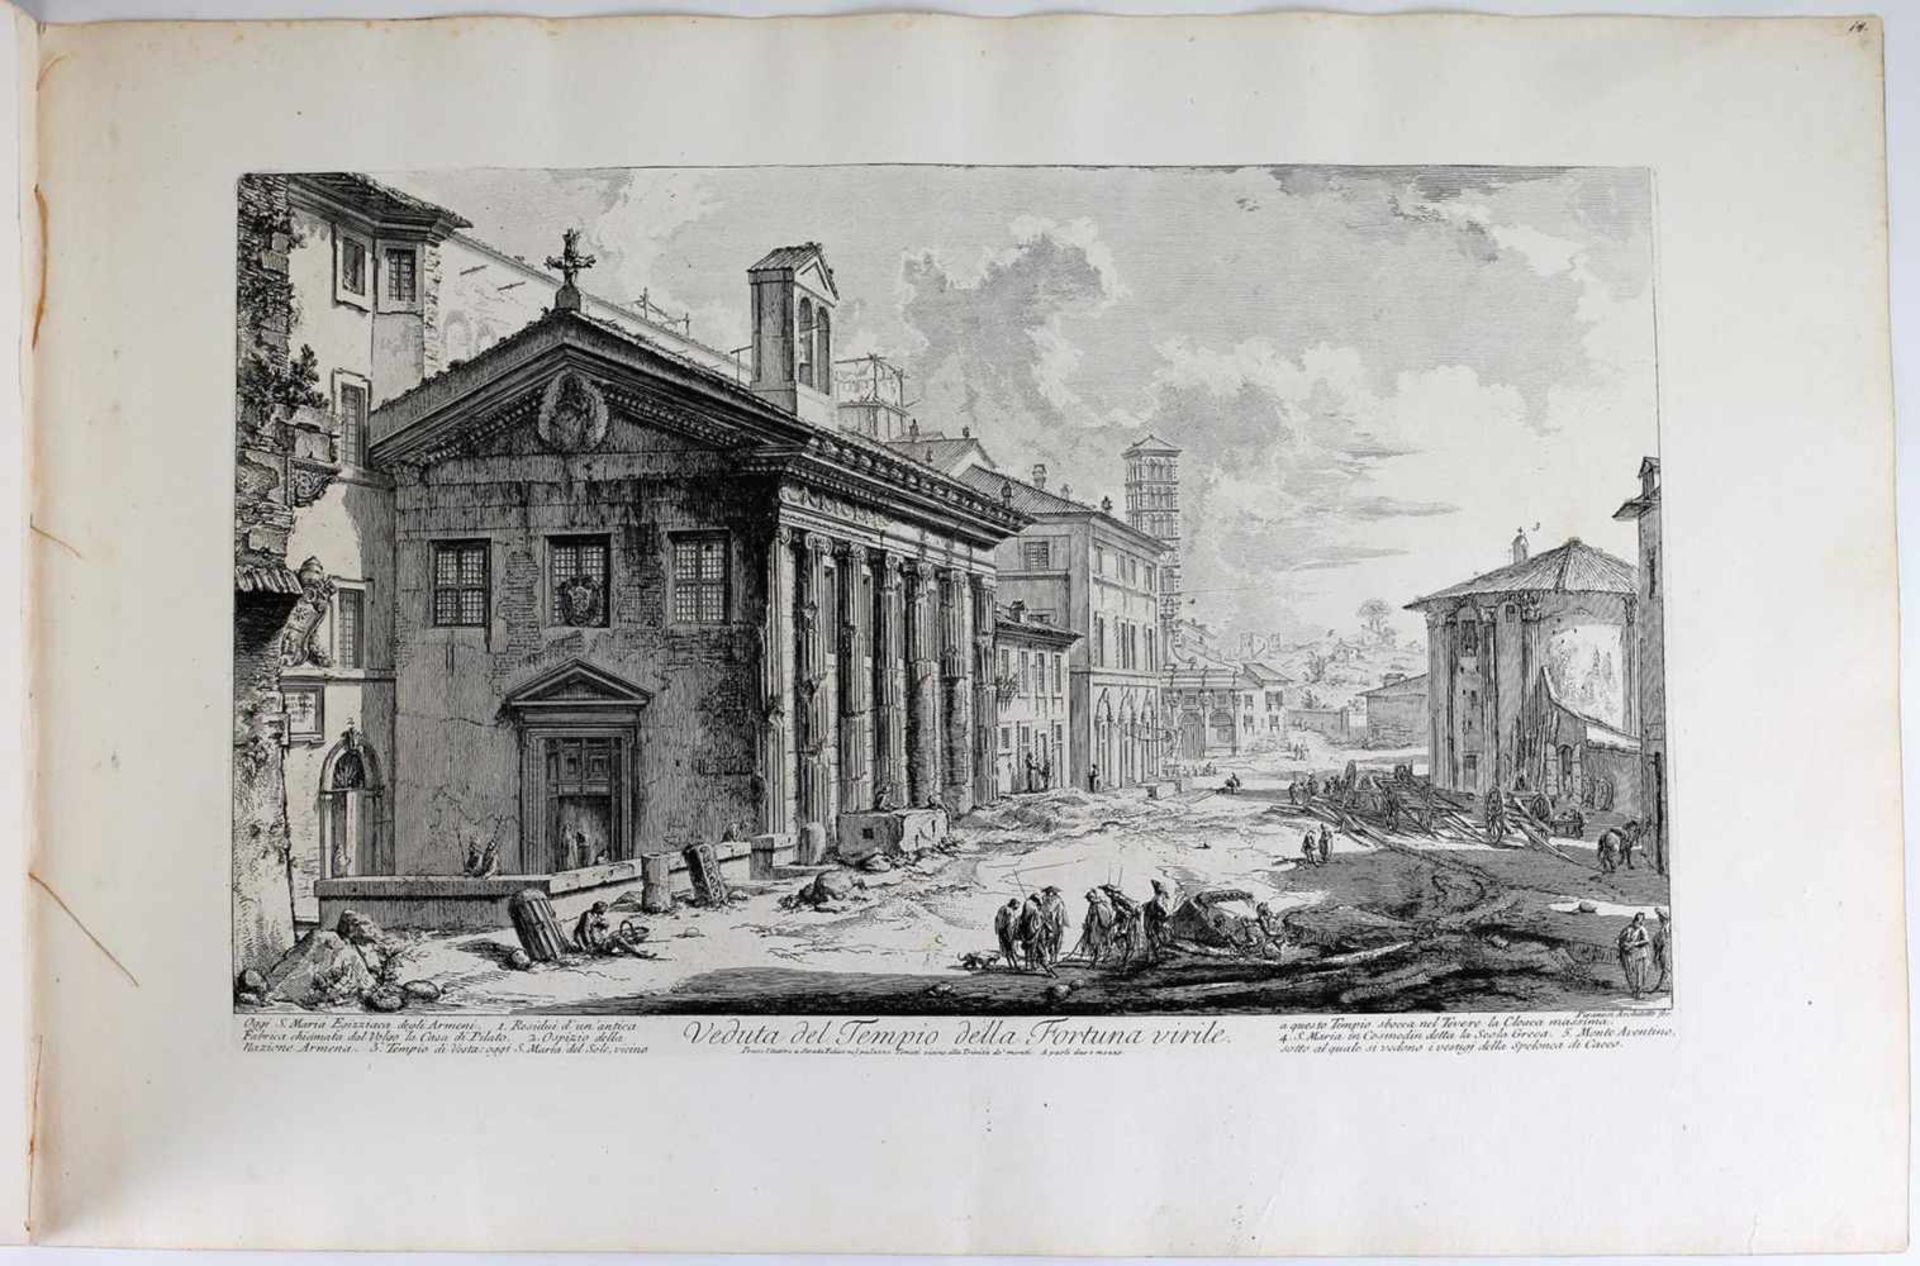 Piranesi, G.B. Teatro di Marcello und Veduta del Tempio della Fortuna virile, Roma. Mid XVIII